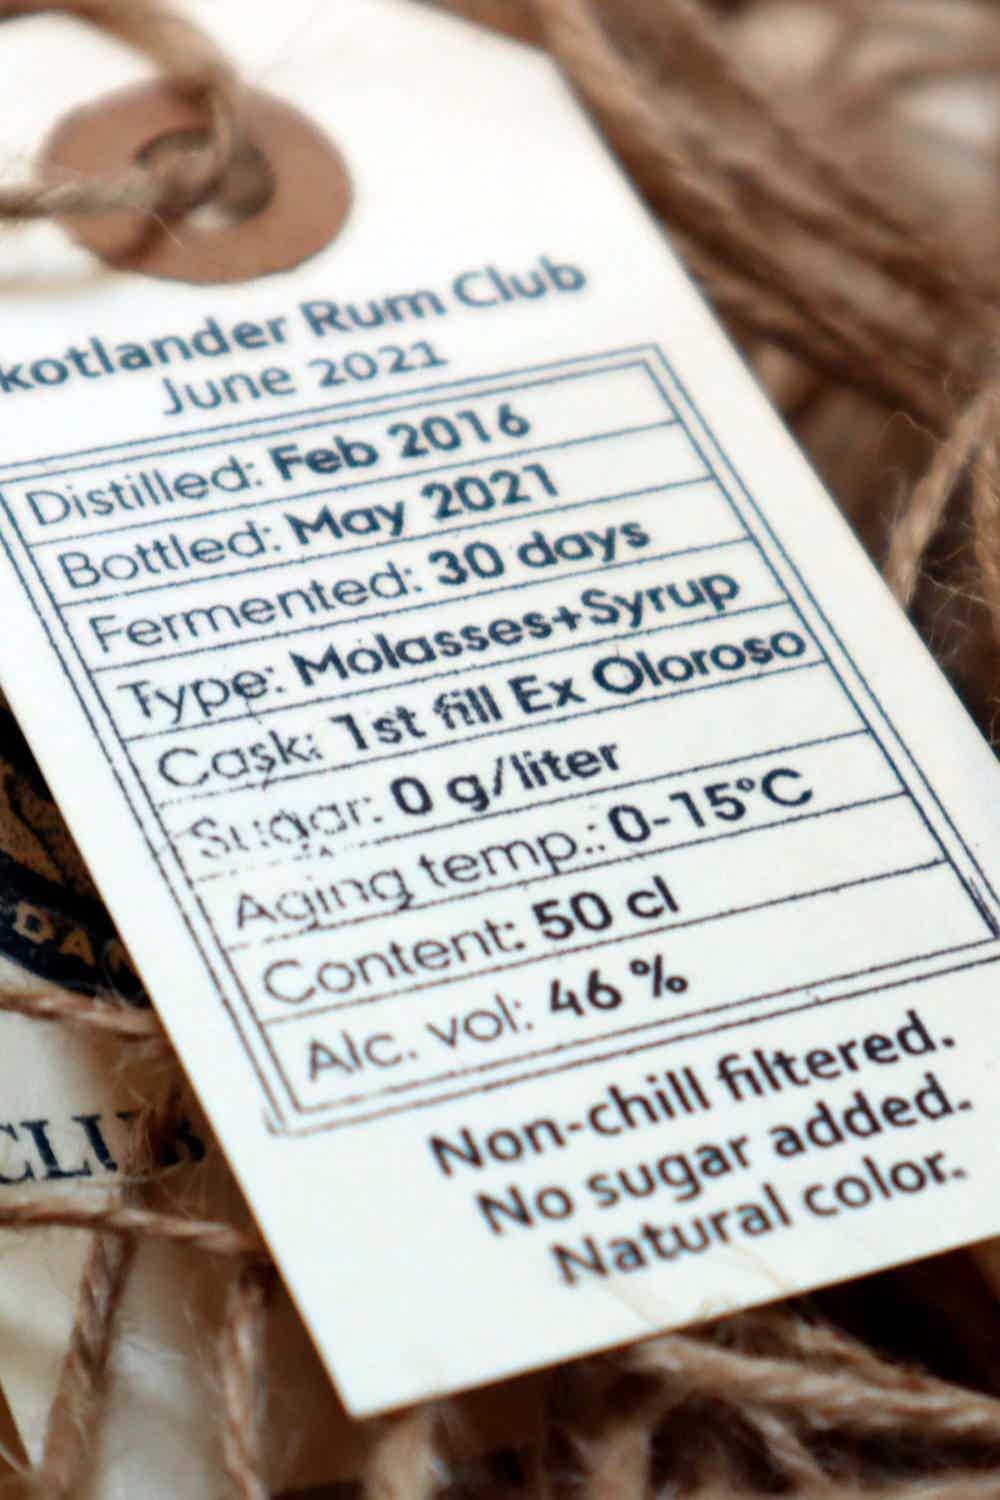 Skotlander Rum Club 50.0% 0.5L, Spirits